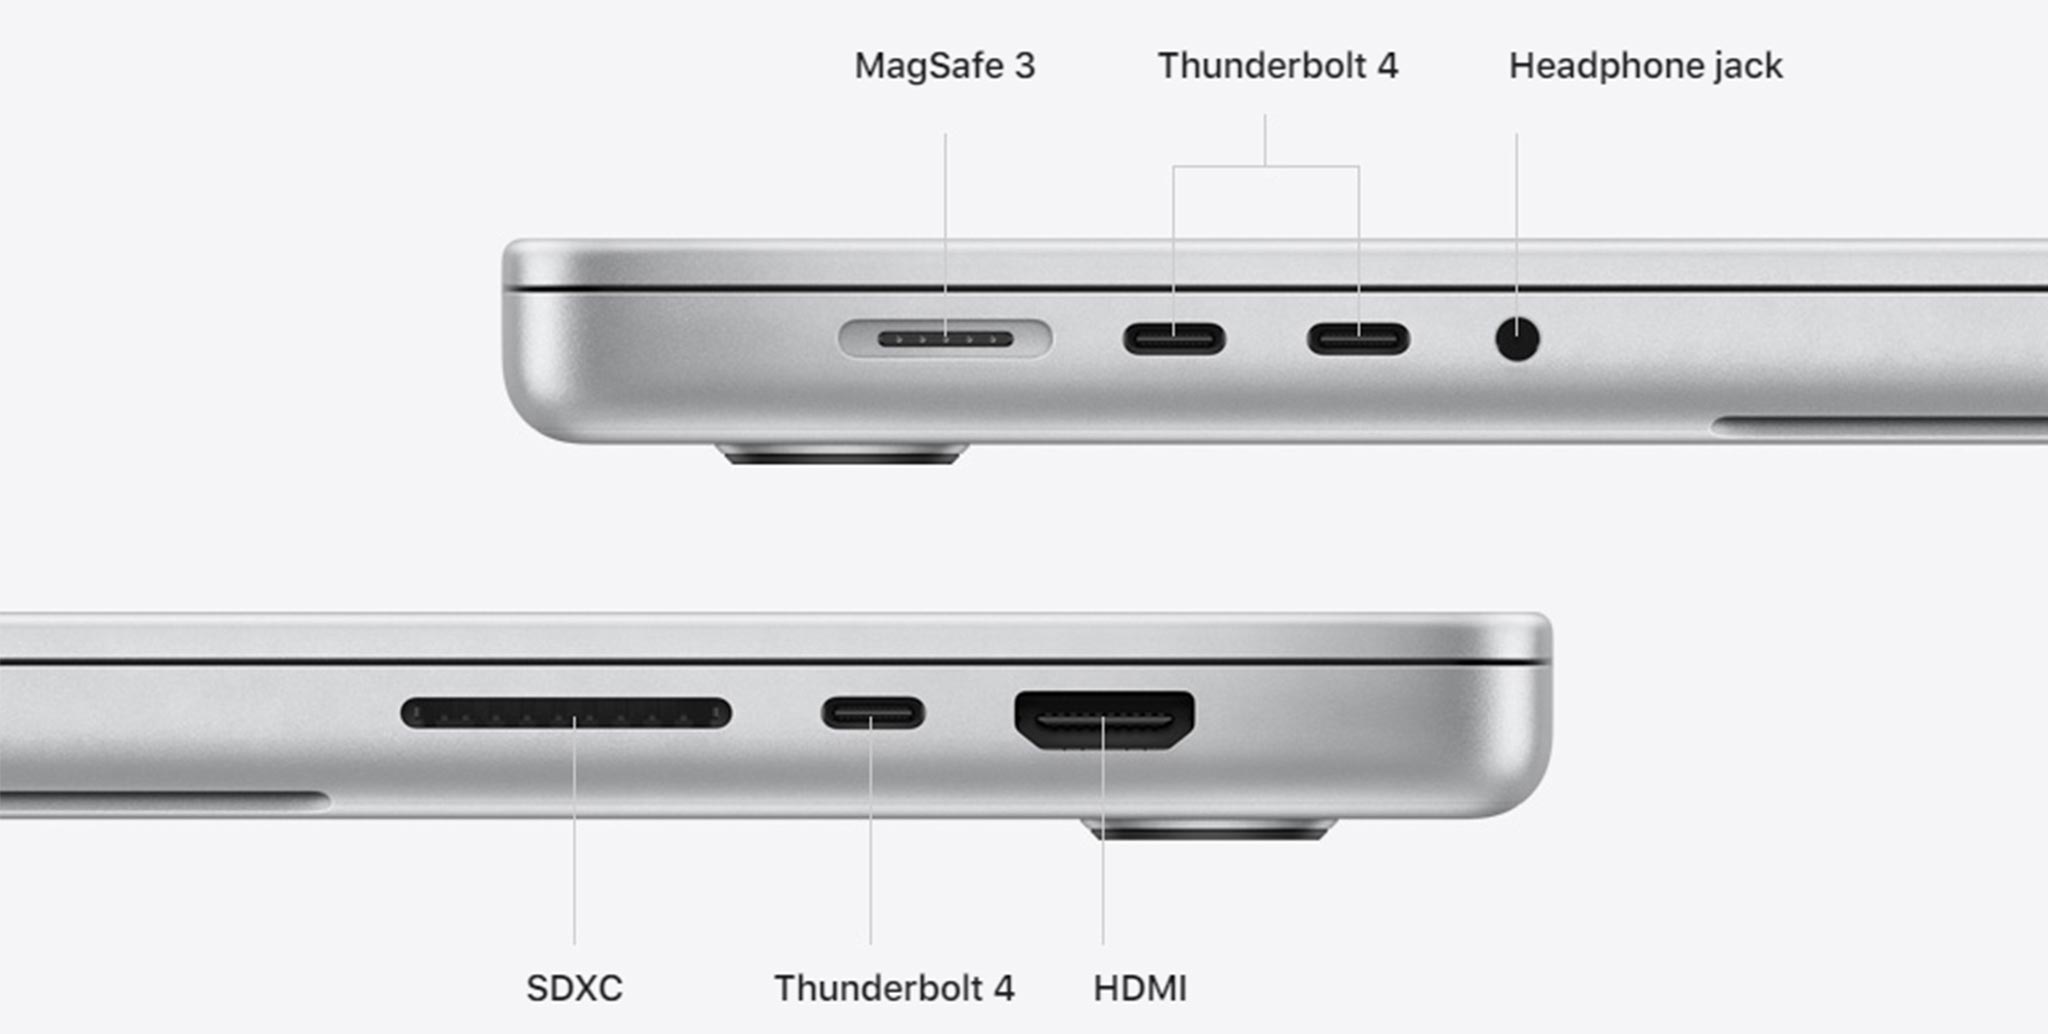 Cổng MagSafe trở lại, chuyện gì đang xảy ra với MacBook Pro 2021?